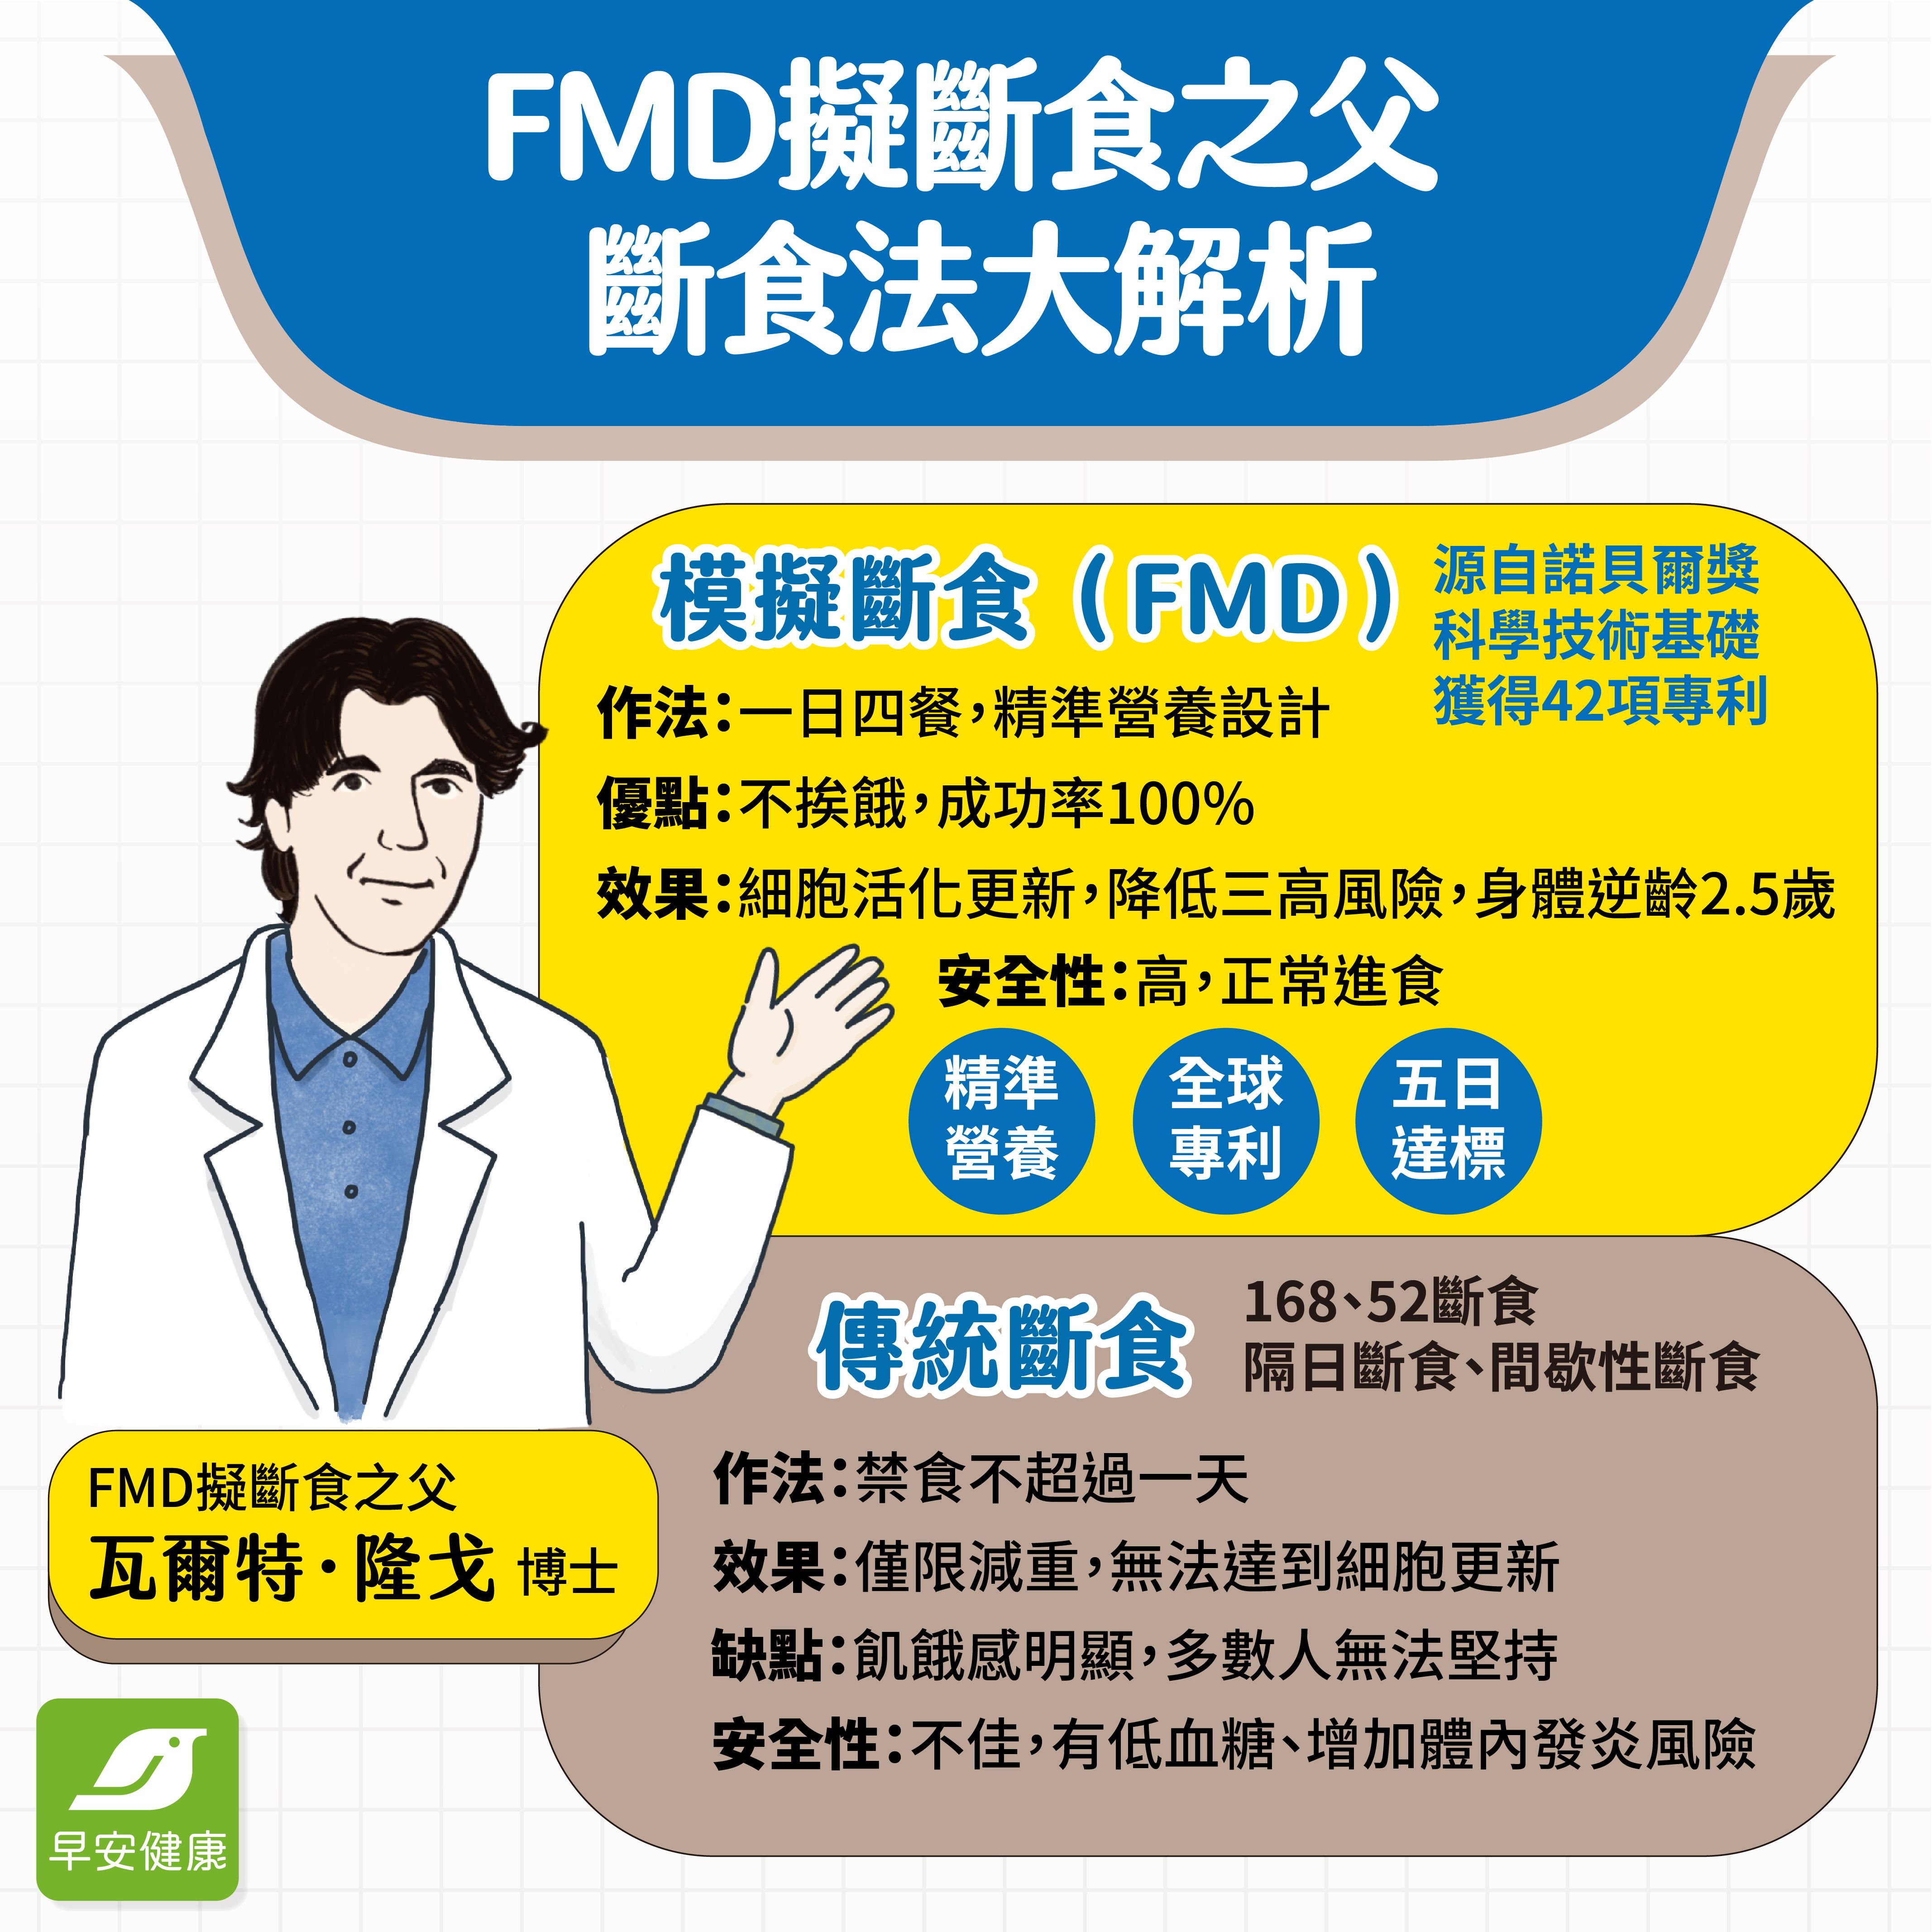 FMD模擬斷食獲得全球專利，源自諾貝爾得獎技術基礎